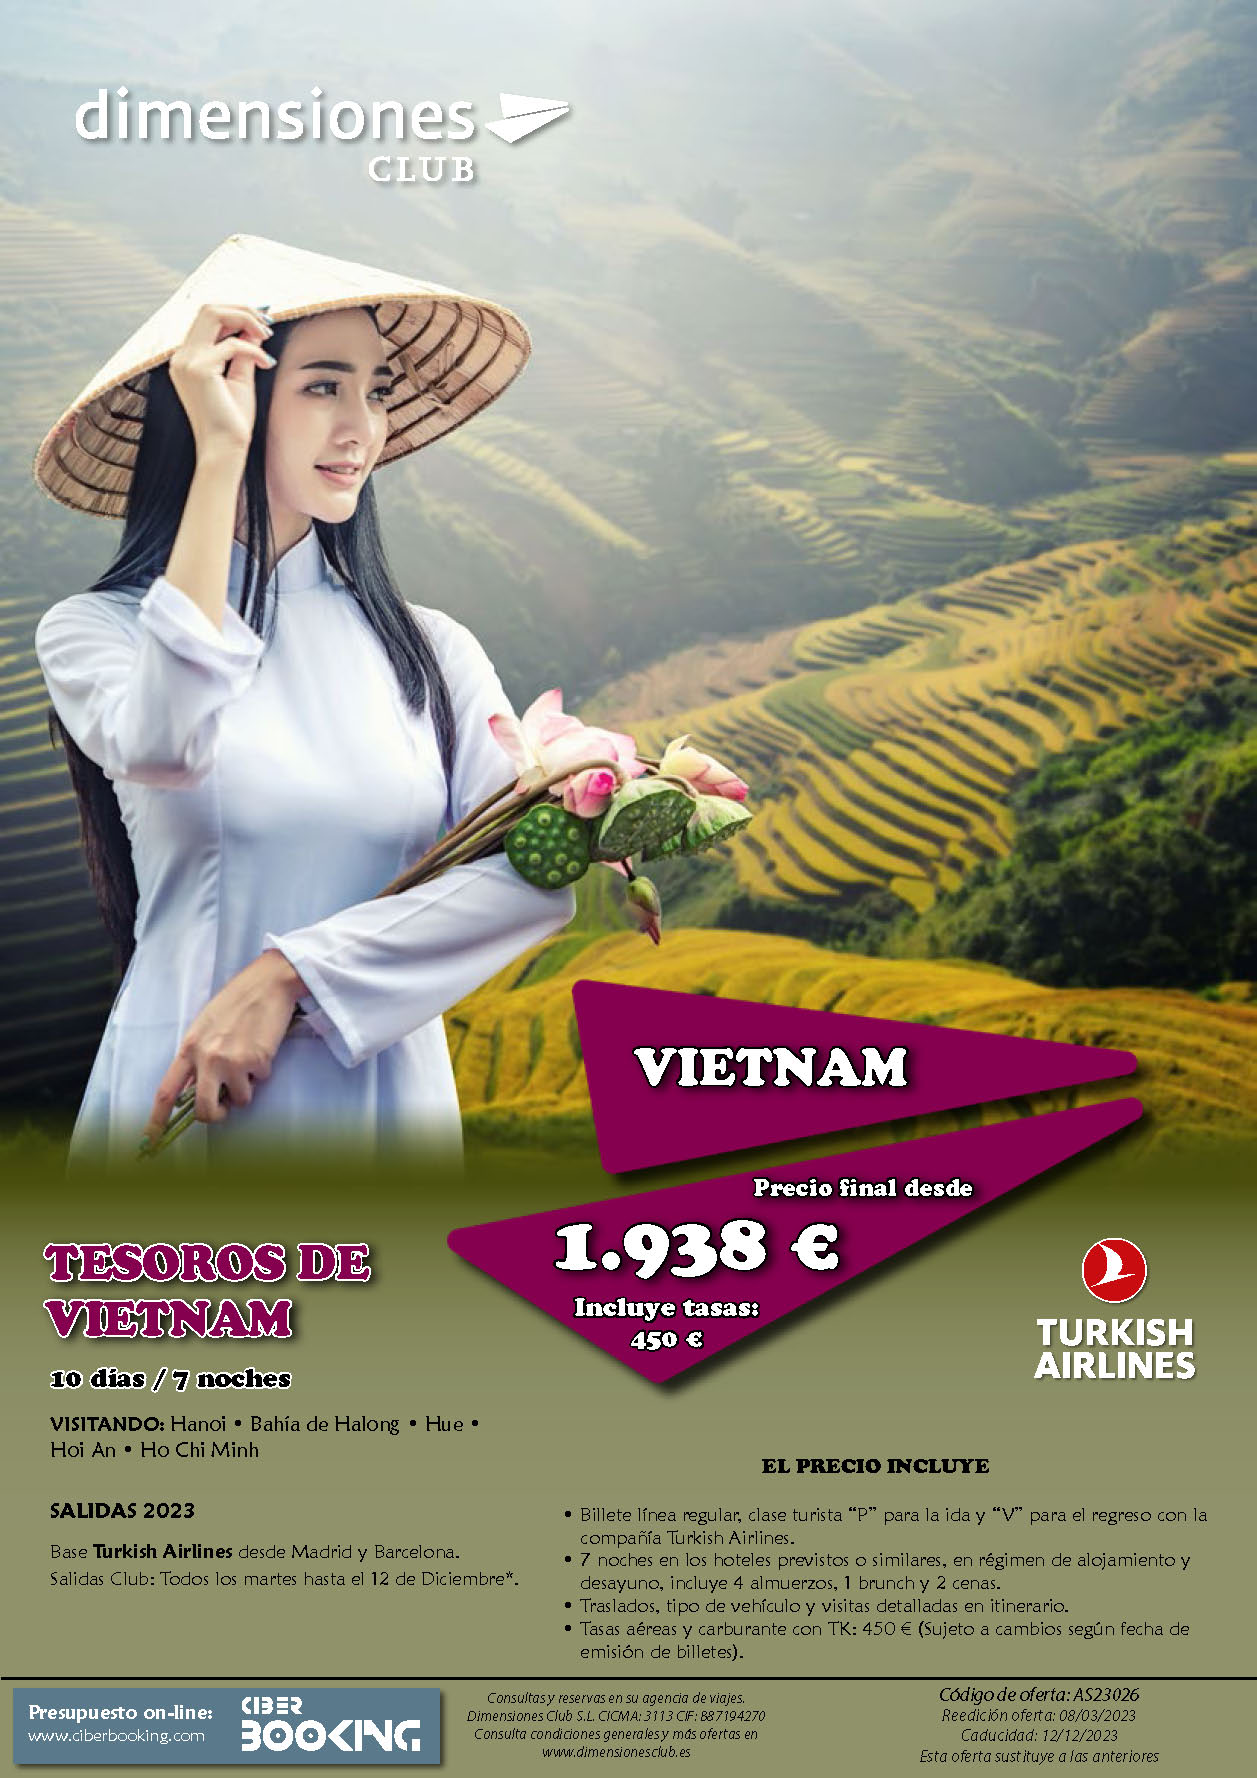 Oferta Dimensiones Club Tesoros de Vietnam 10 dias salidas Septiembre a Diciembre 2023 desde Madrid y Barcelona vuelos Turkish Airlines